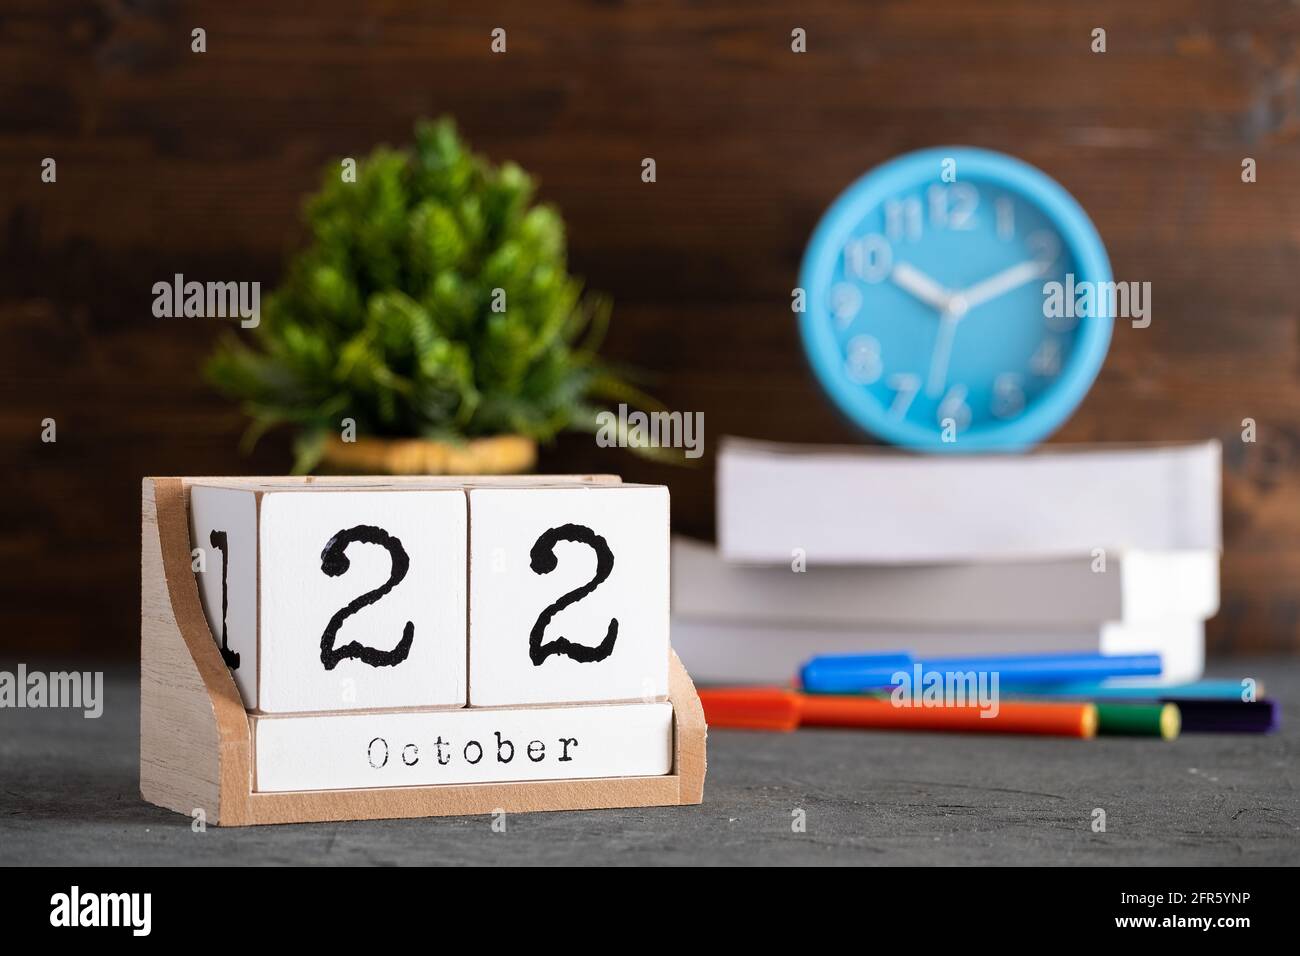 22 octobre. Octobre 22 calendrier cube en bois avec objets flous sur fond. Banque D'Images